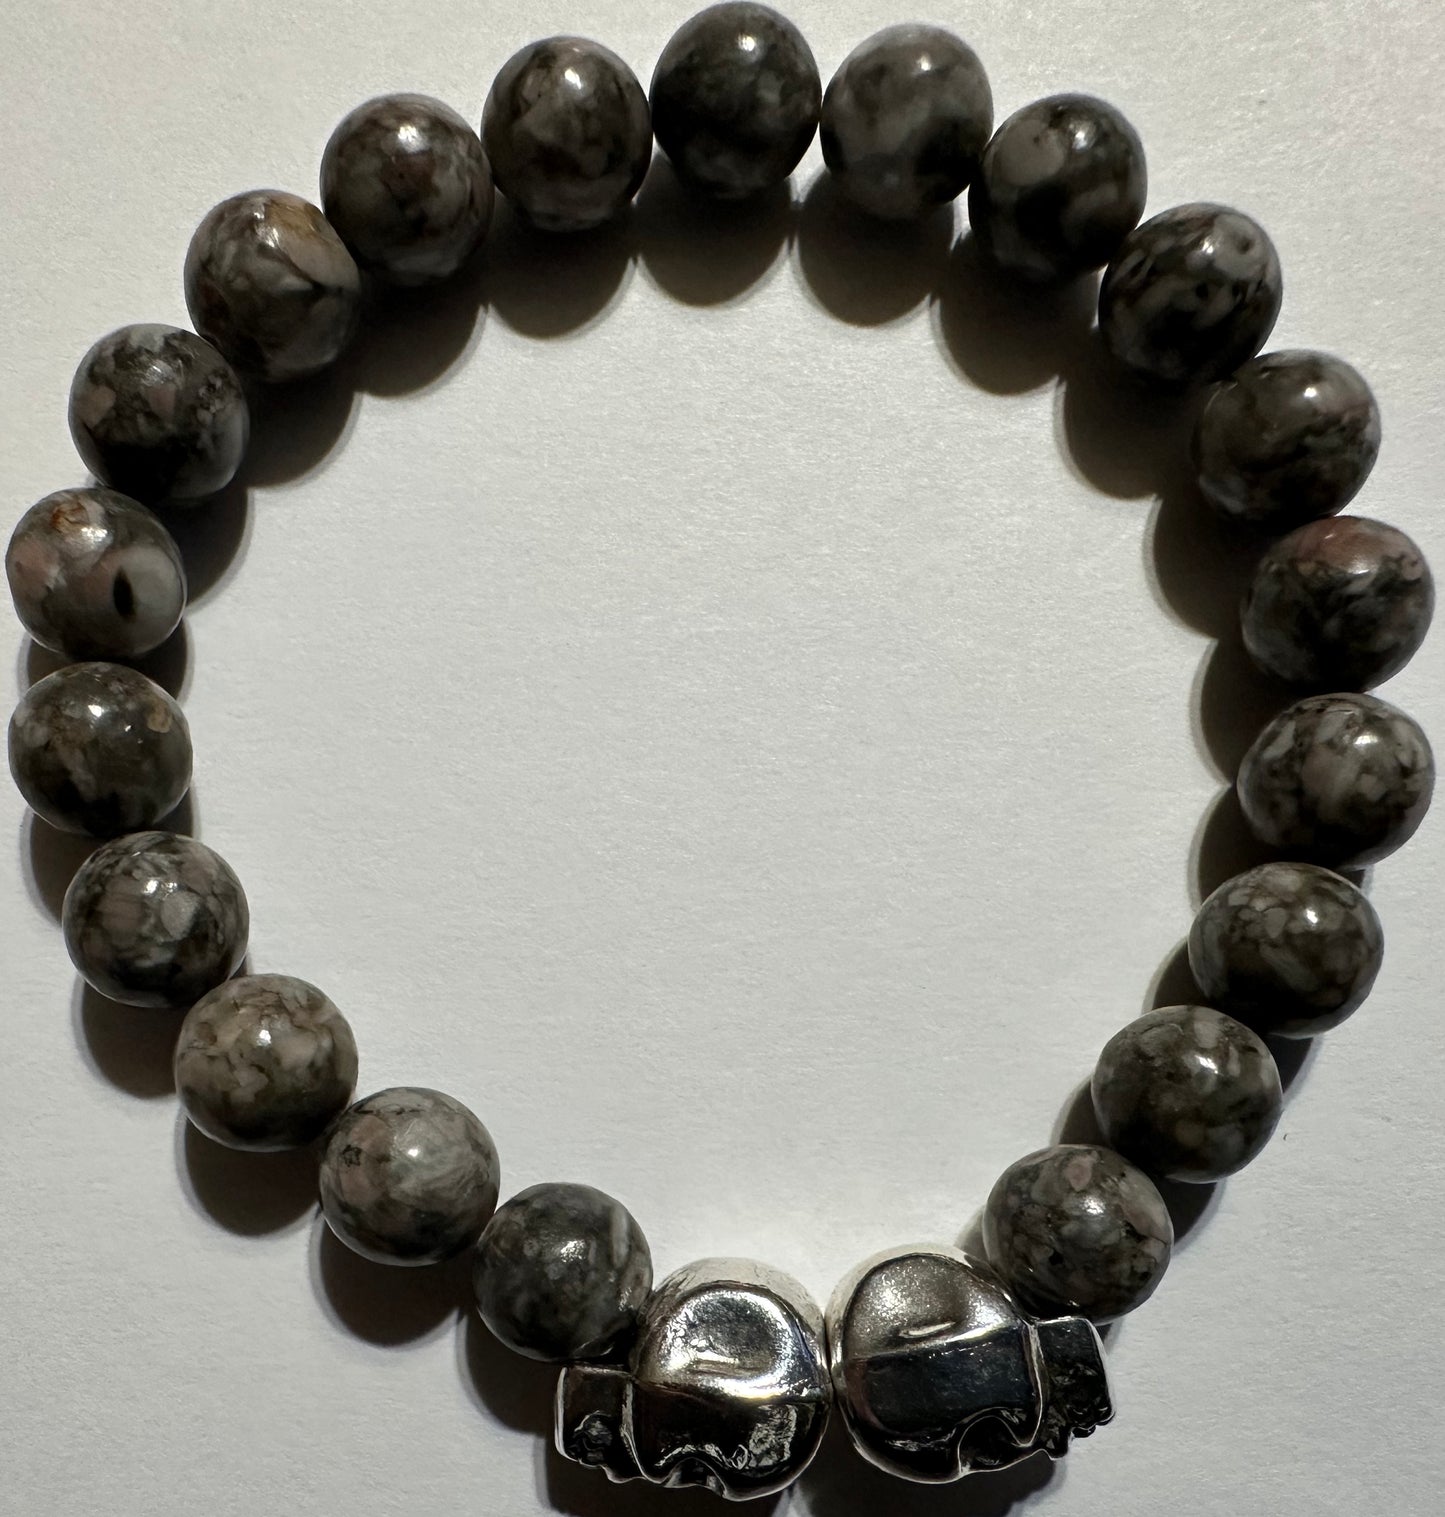 Llinate and Silver Color Skull Gemstone Bracelet